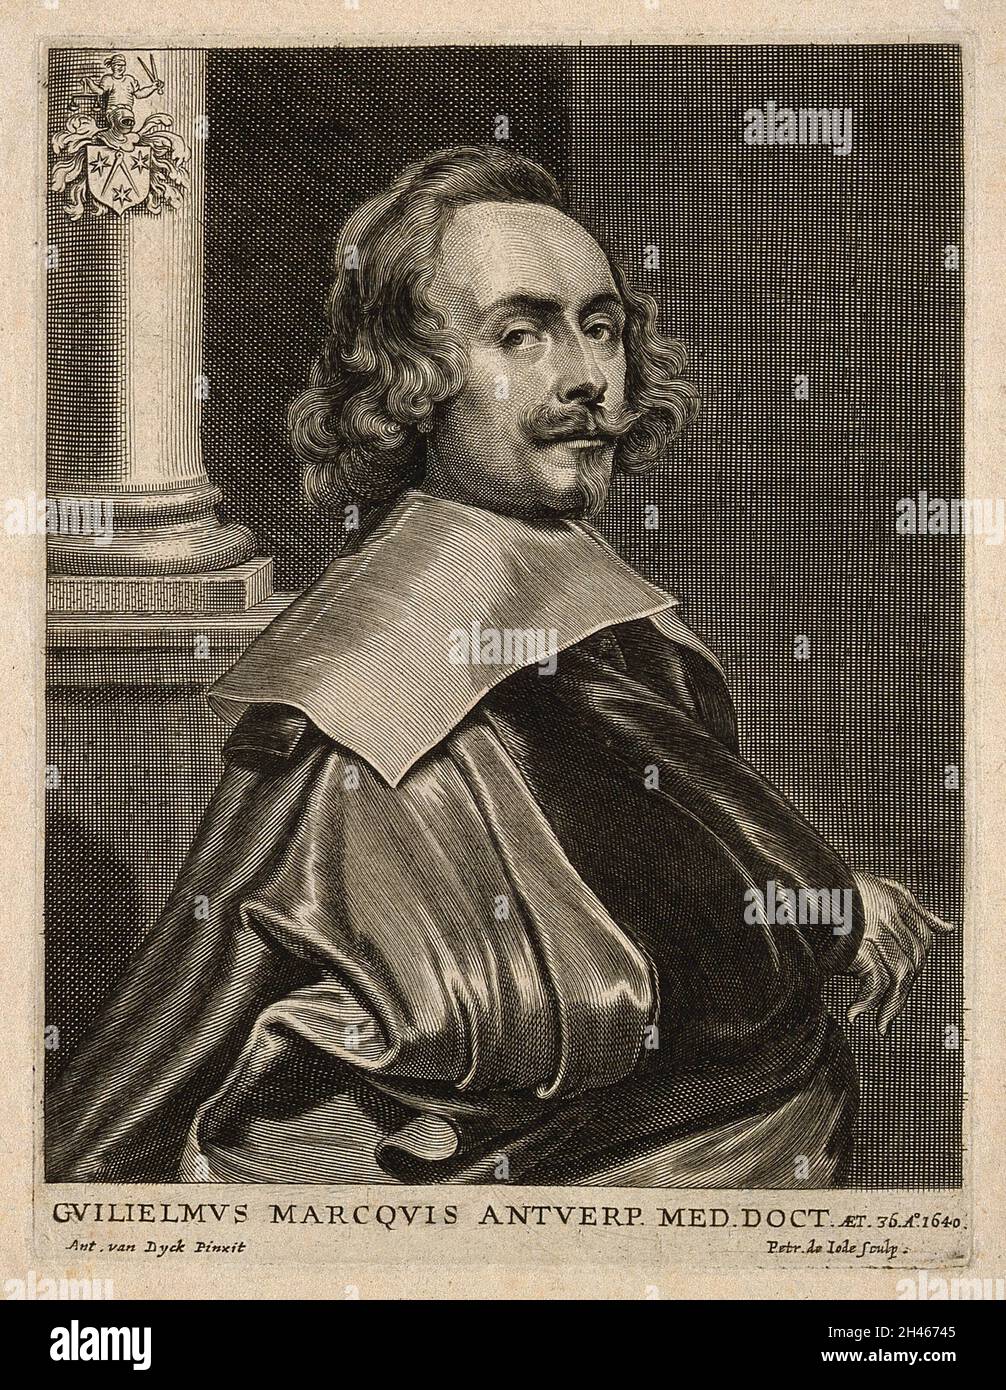 Willem Marquis. Linienstich von P. de Jode nach A. van Dyck. Stockfoto